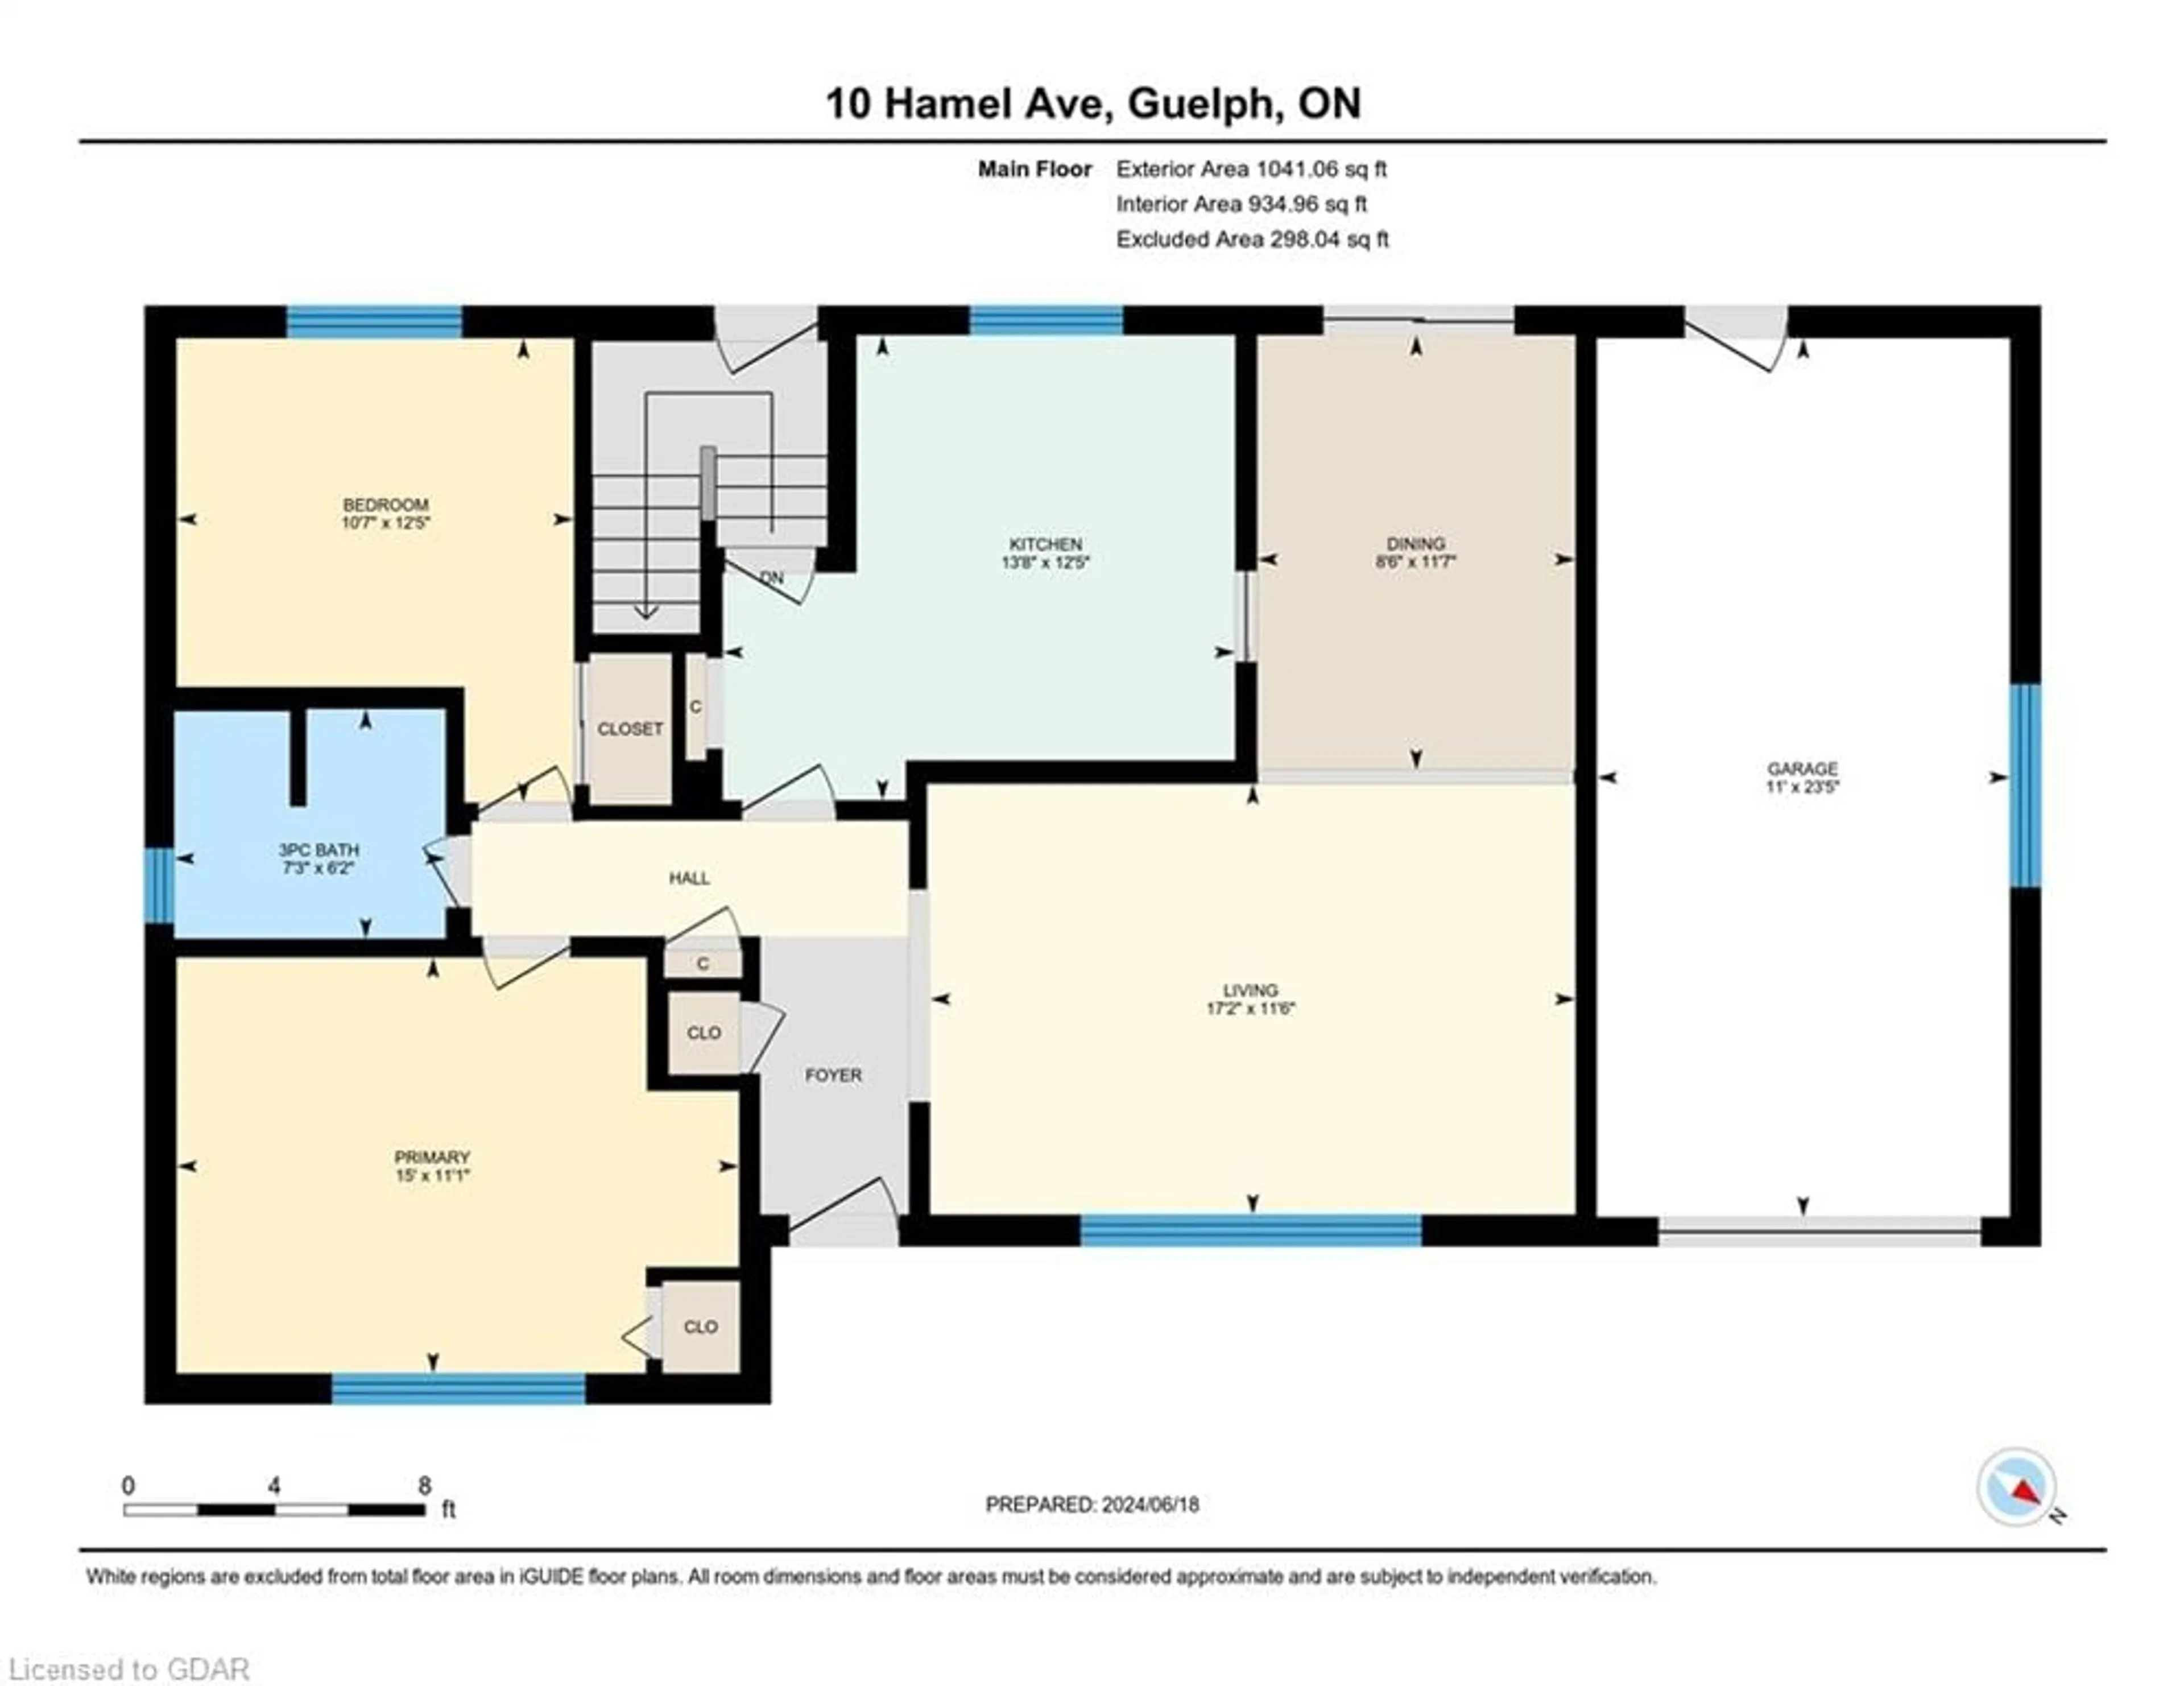 Floor plan for 10 Hamel Ave, Guelph Ontario N1H 5M1